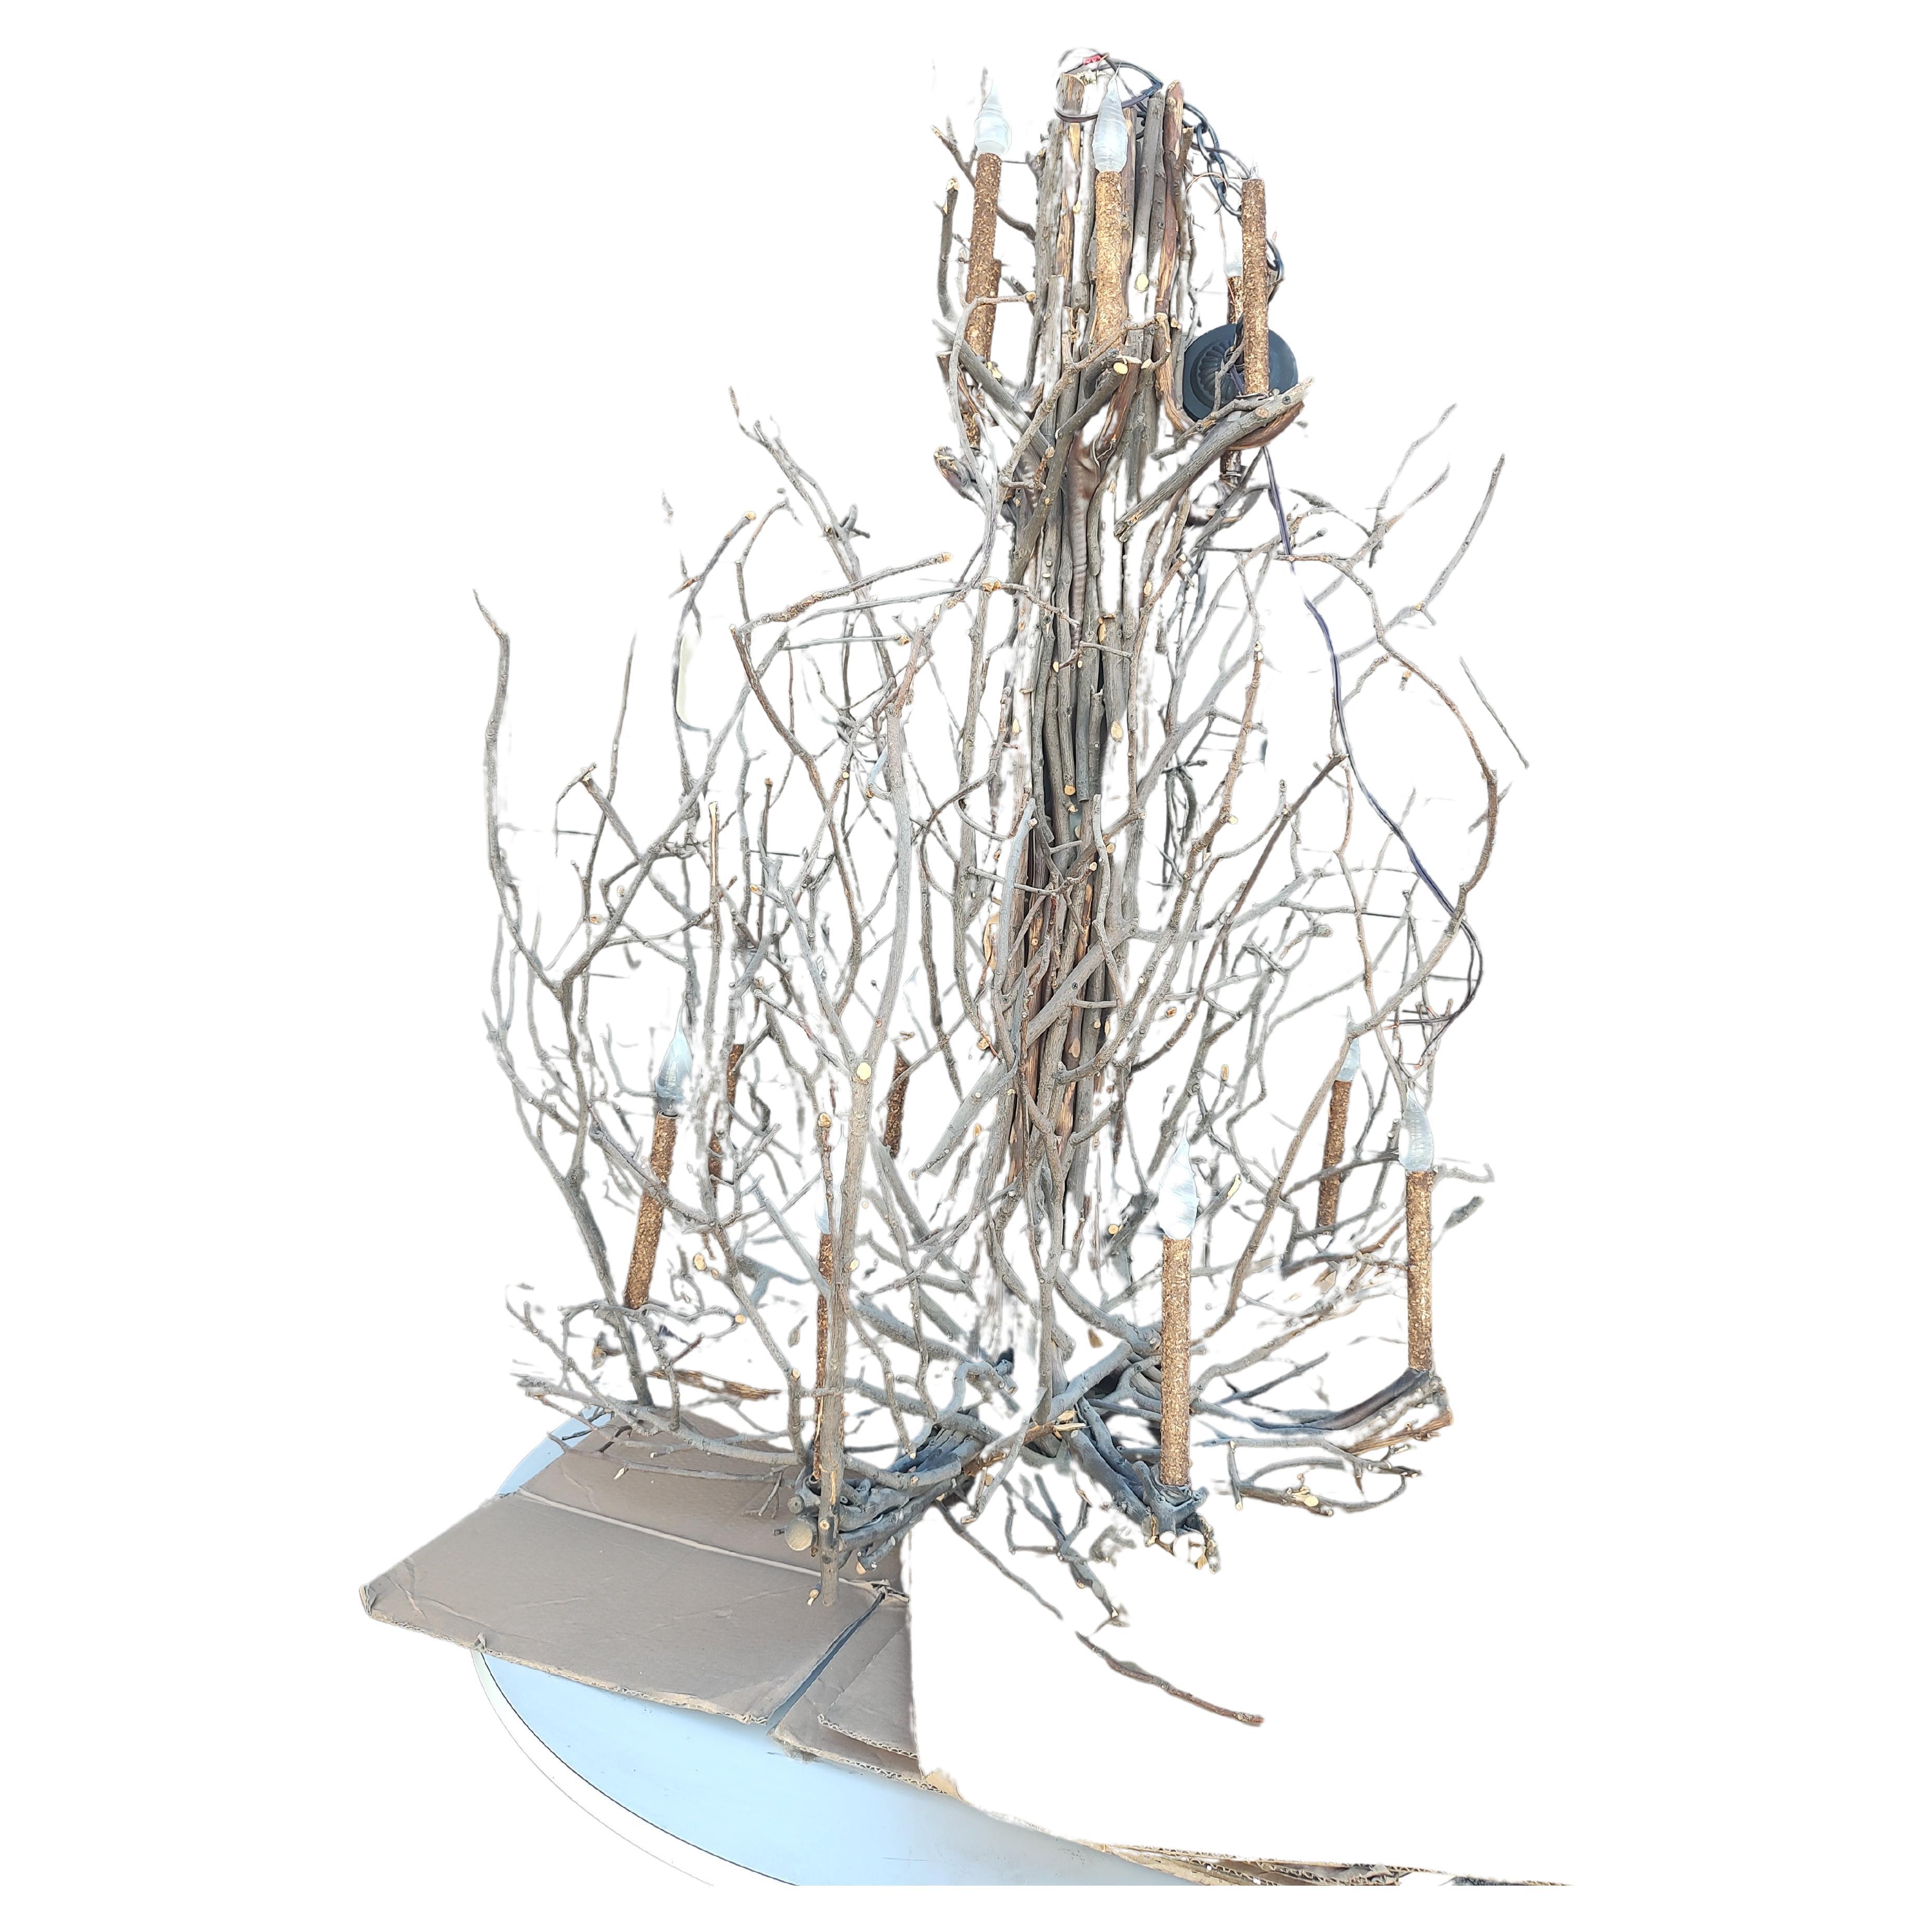 Fantastischer Adirondack Twig Chandelier mit 14 Lichtern auf 2 Etagen.  Acht auf der Unterseite und sechs auf der Oberseite. Der Maßstab ist groß, denn er ist 60 Zoll hoch (ohne die Kette) und hat einen Durchmesser von etwa 42 Zoll. Die gesamte